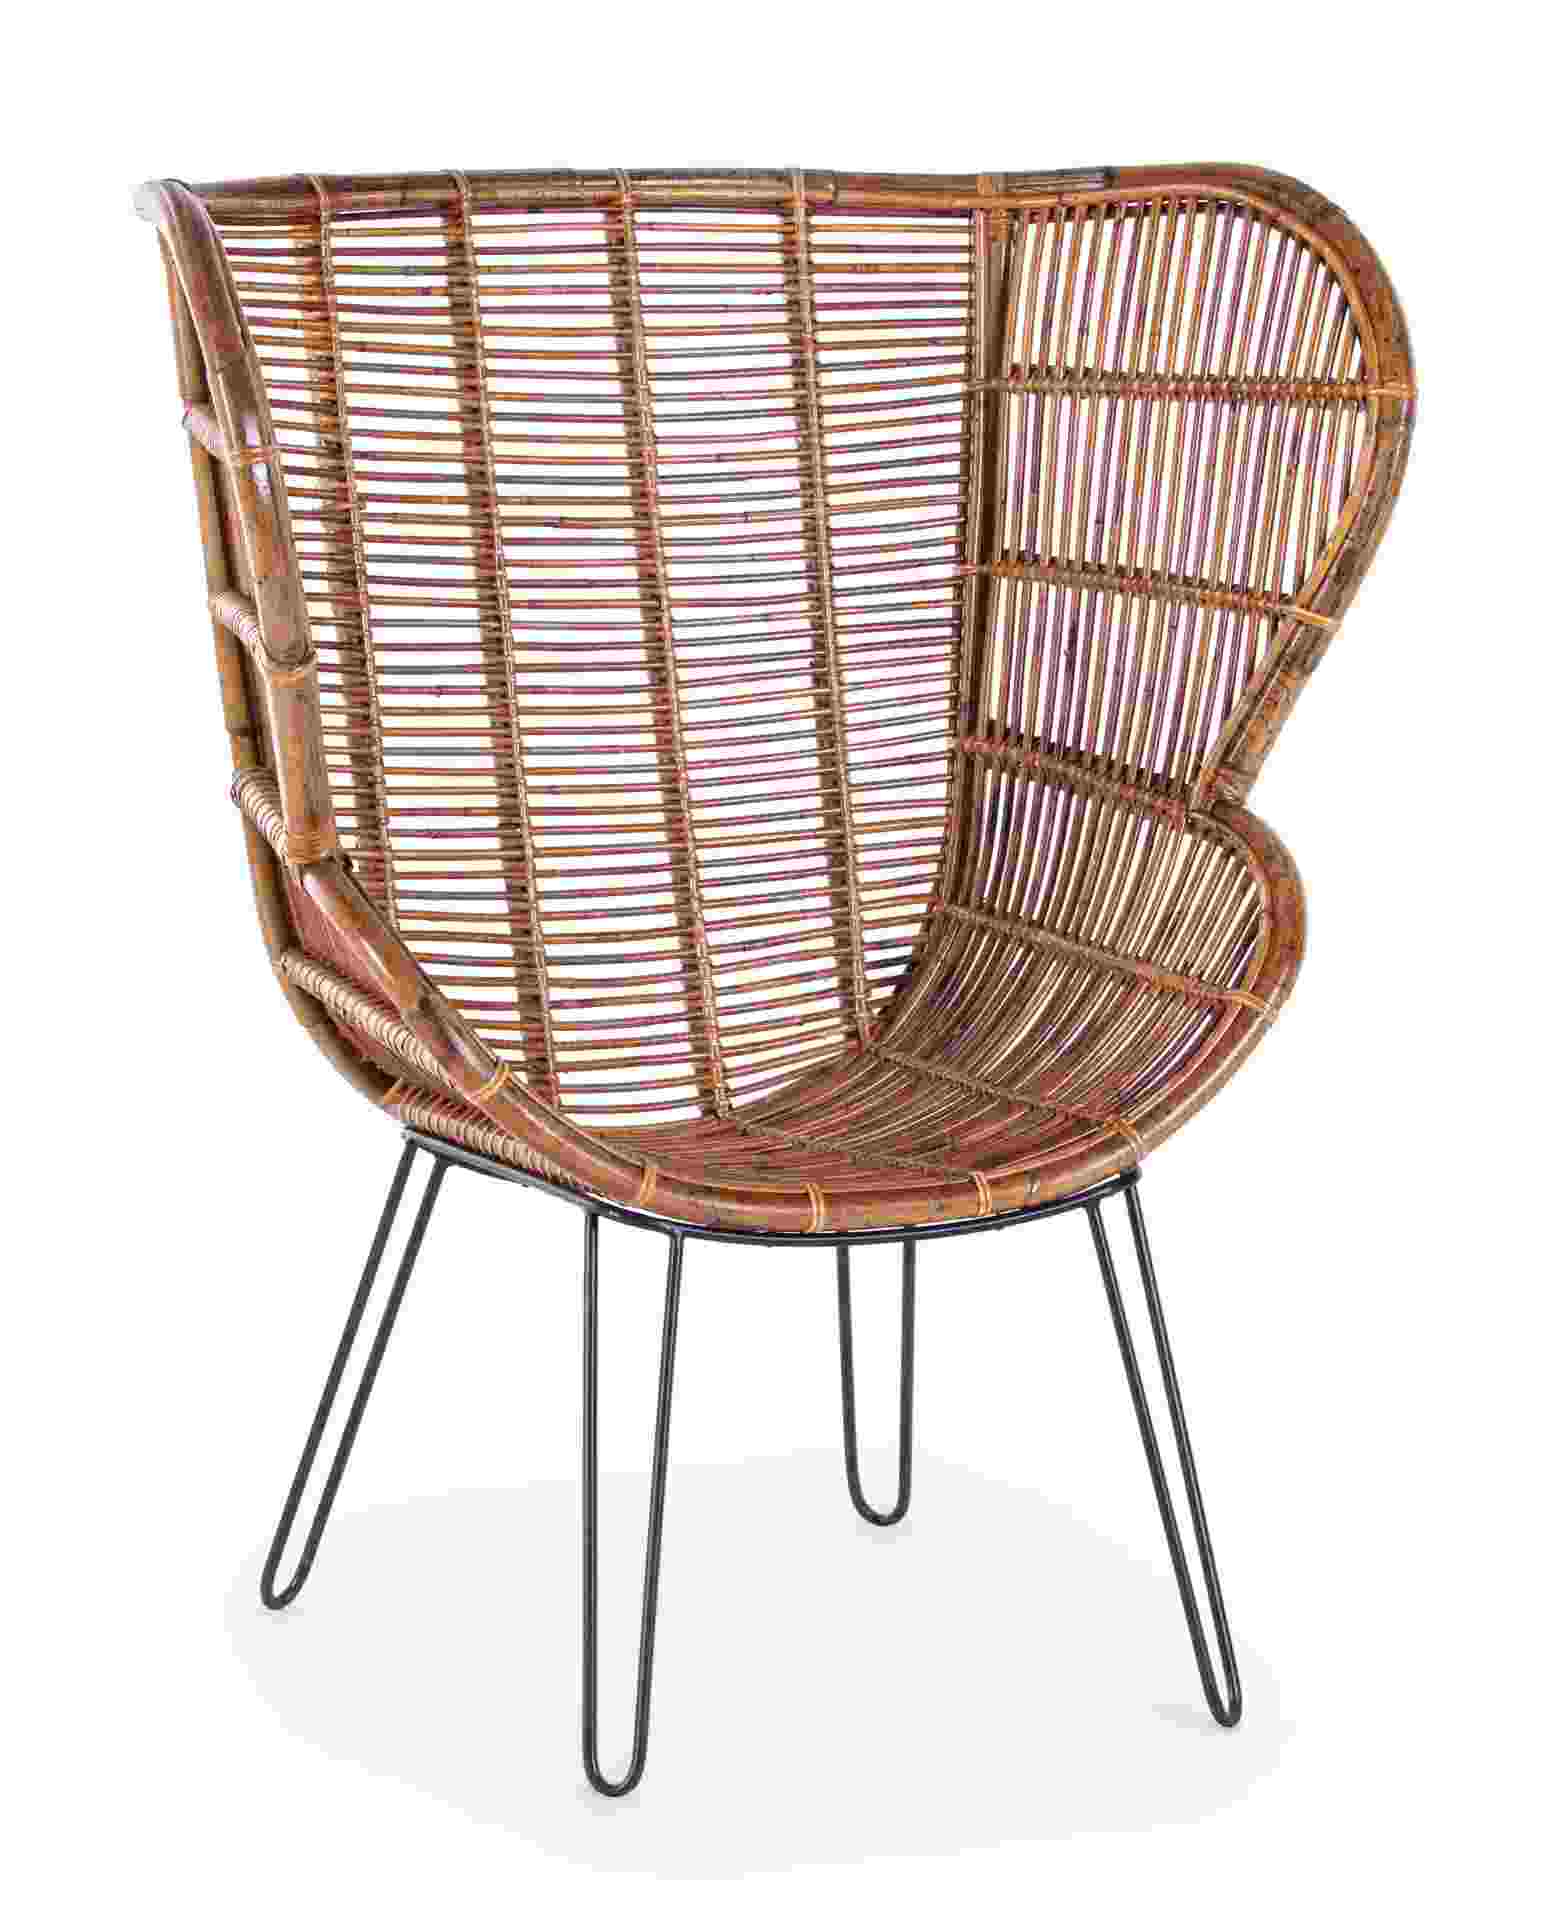 Der Sessel Estefan überzeugt mit seinem klassischen Design. Gefertigt wurde er aus Rattan, welches einen braunen Farbton besitzt. Das Gestell ist aus Metall und hat eine schwarze Farbe. Der Sessel besitzt eine Sitzhöhe von 42 cm. Die Breite beträgt 100 cm